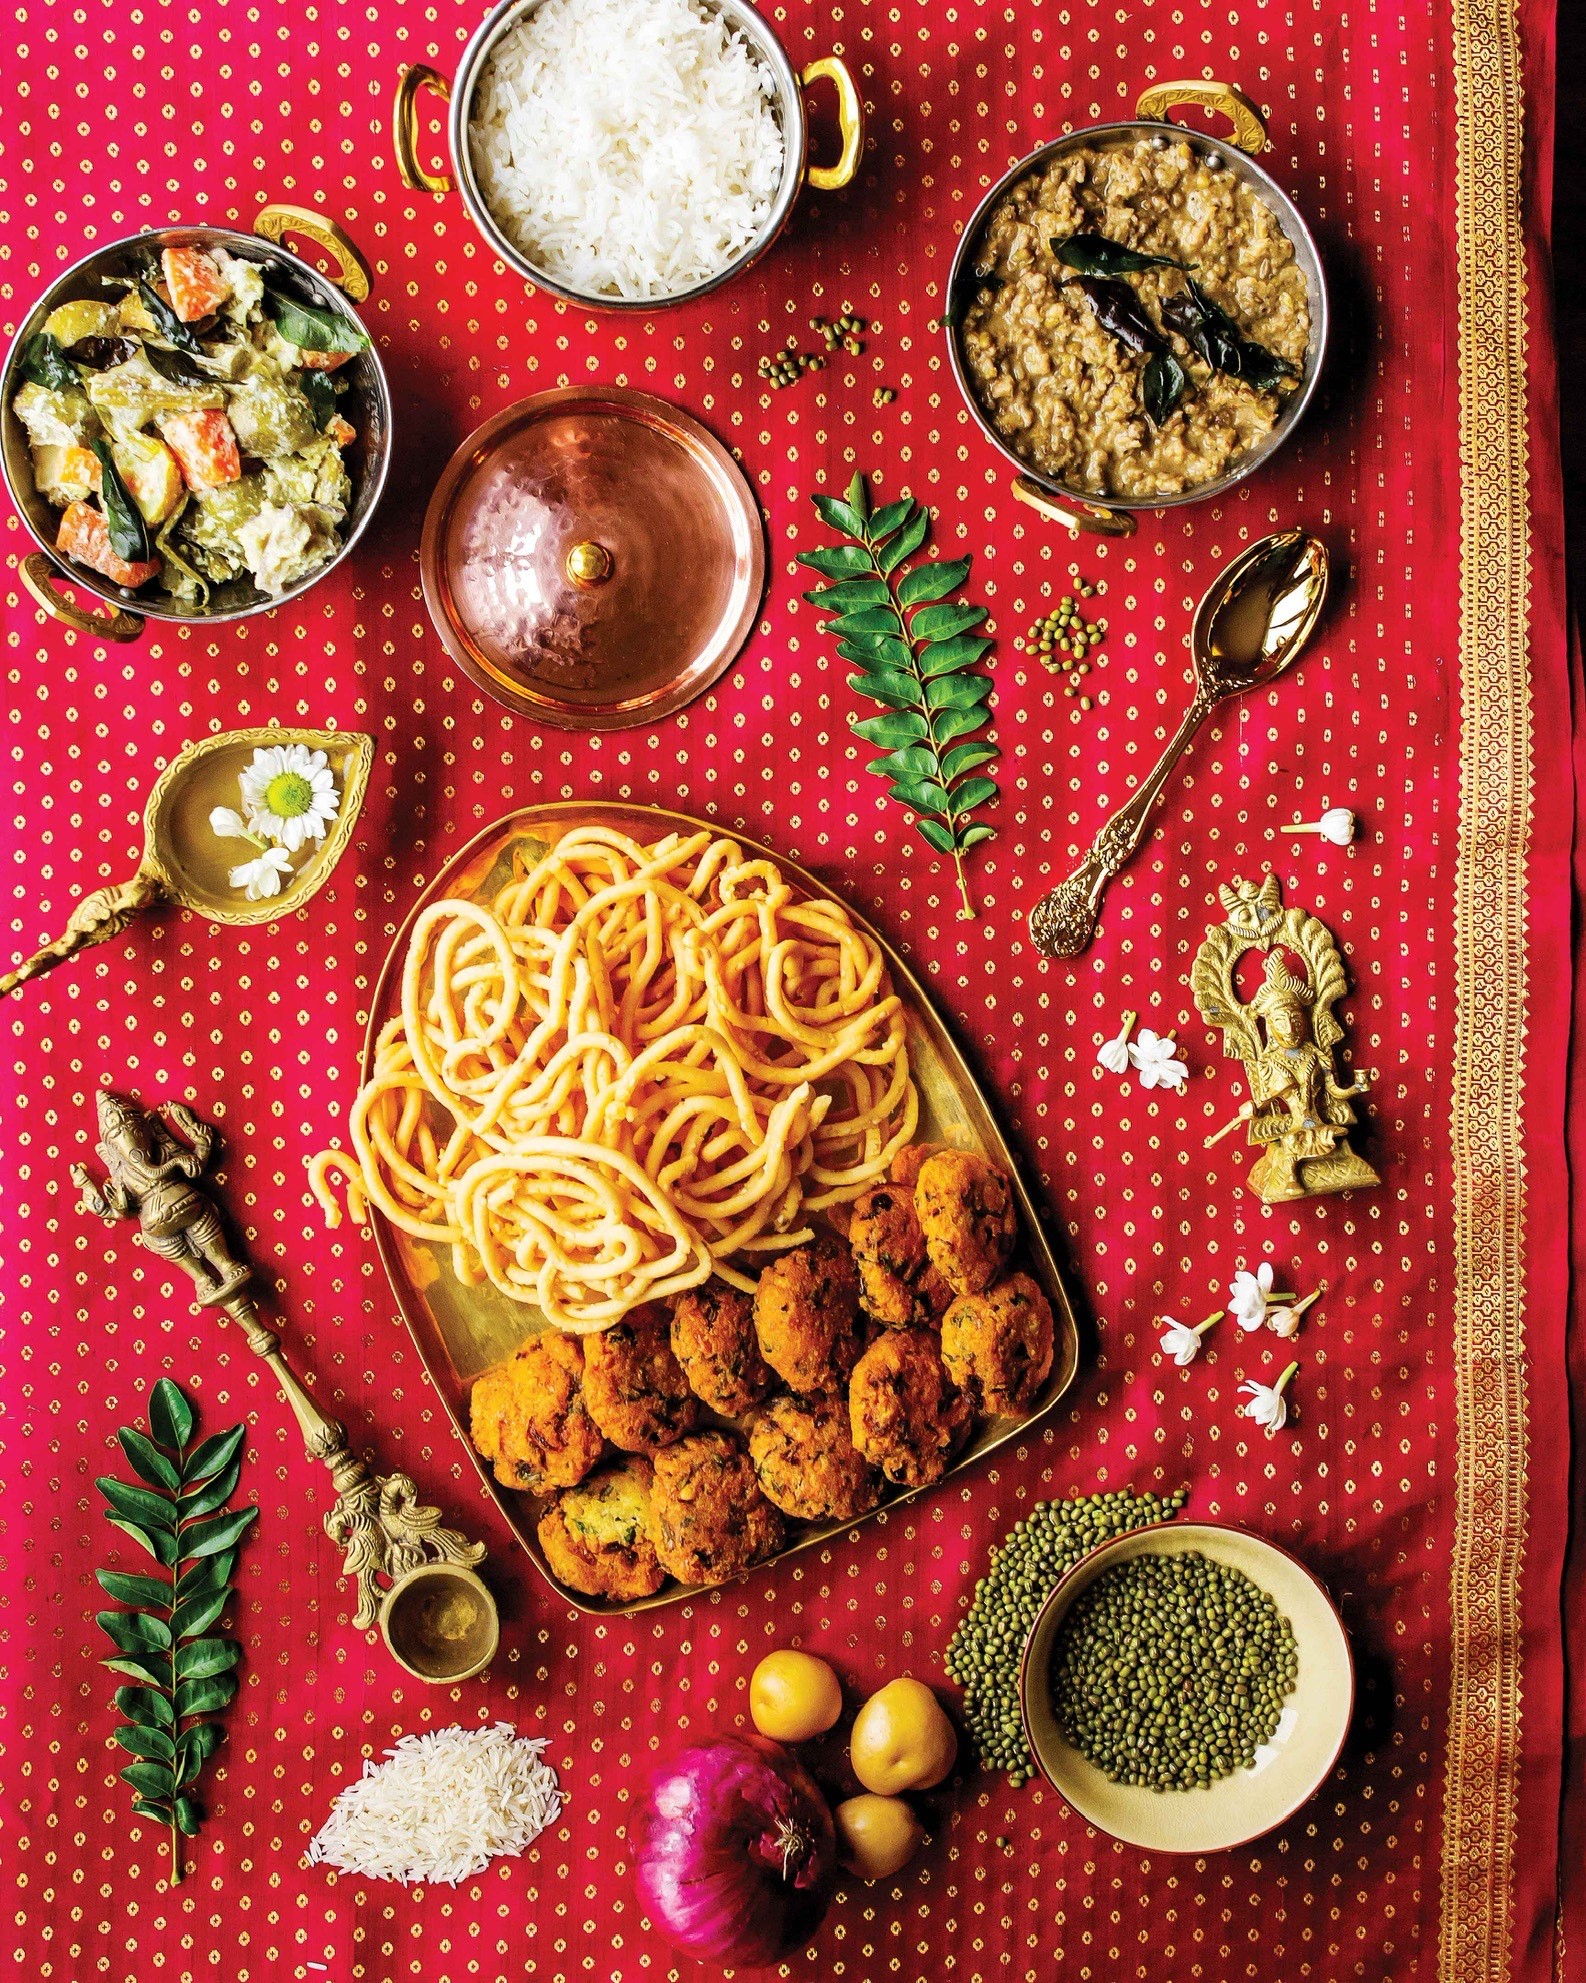 Plusieurs plats du livre, dont le murukku (casse-croûte croustillant), le vada (casse-croûte frit), l’avial (curry de noix de coco avec des légumes), le riz basmati et le dhal (lentilles), sont présentés dans des plats dorés sur un sari de soie magenta et or. Des ingrédients colorés, des fleurs de jasmin et une statue dorée se trouvent sur la table parmi les plats